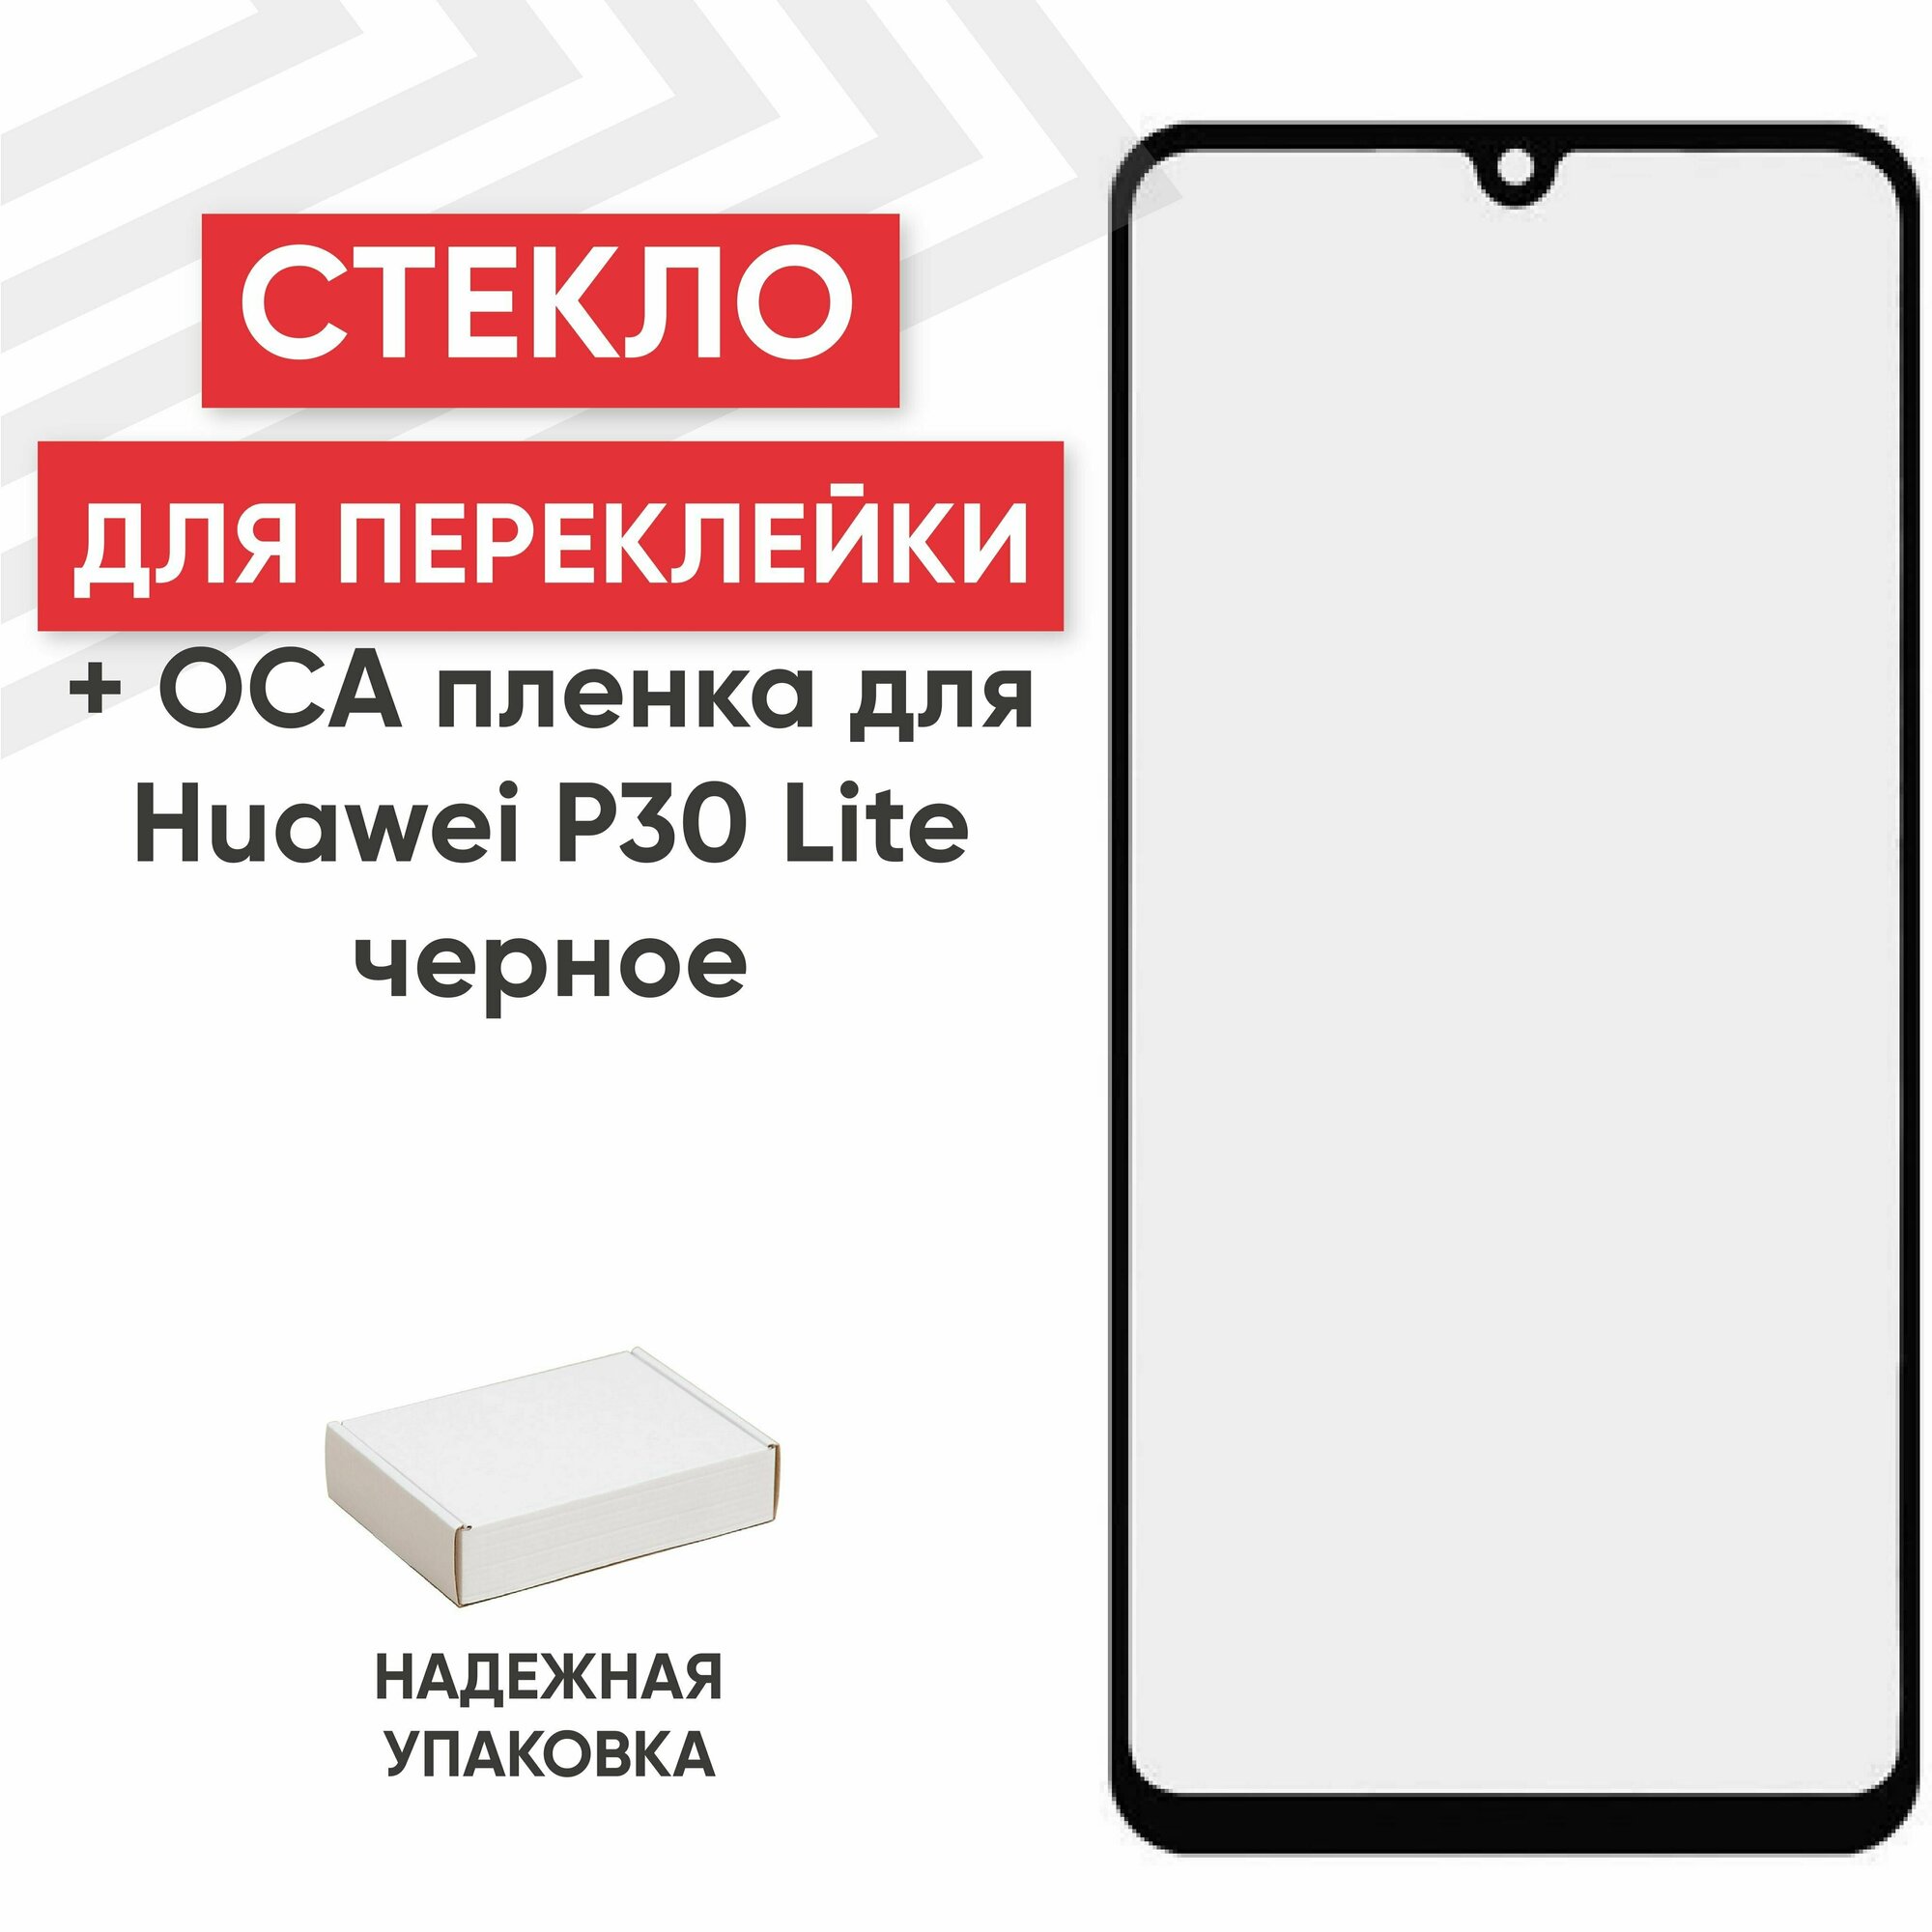 Стекло переклейки дисплея c OCA пленкой для мобильного телефона (смартфона) Huawei P30 Lite, Nova 4E (MAR-LX1M, MAR-AL00), Honor 20S, черное